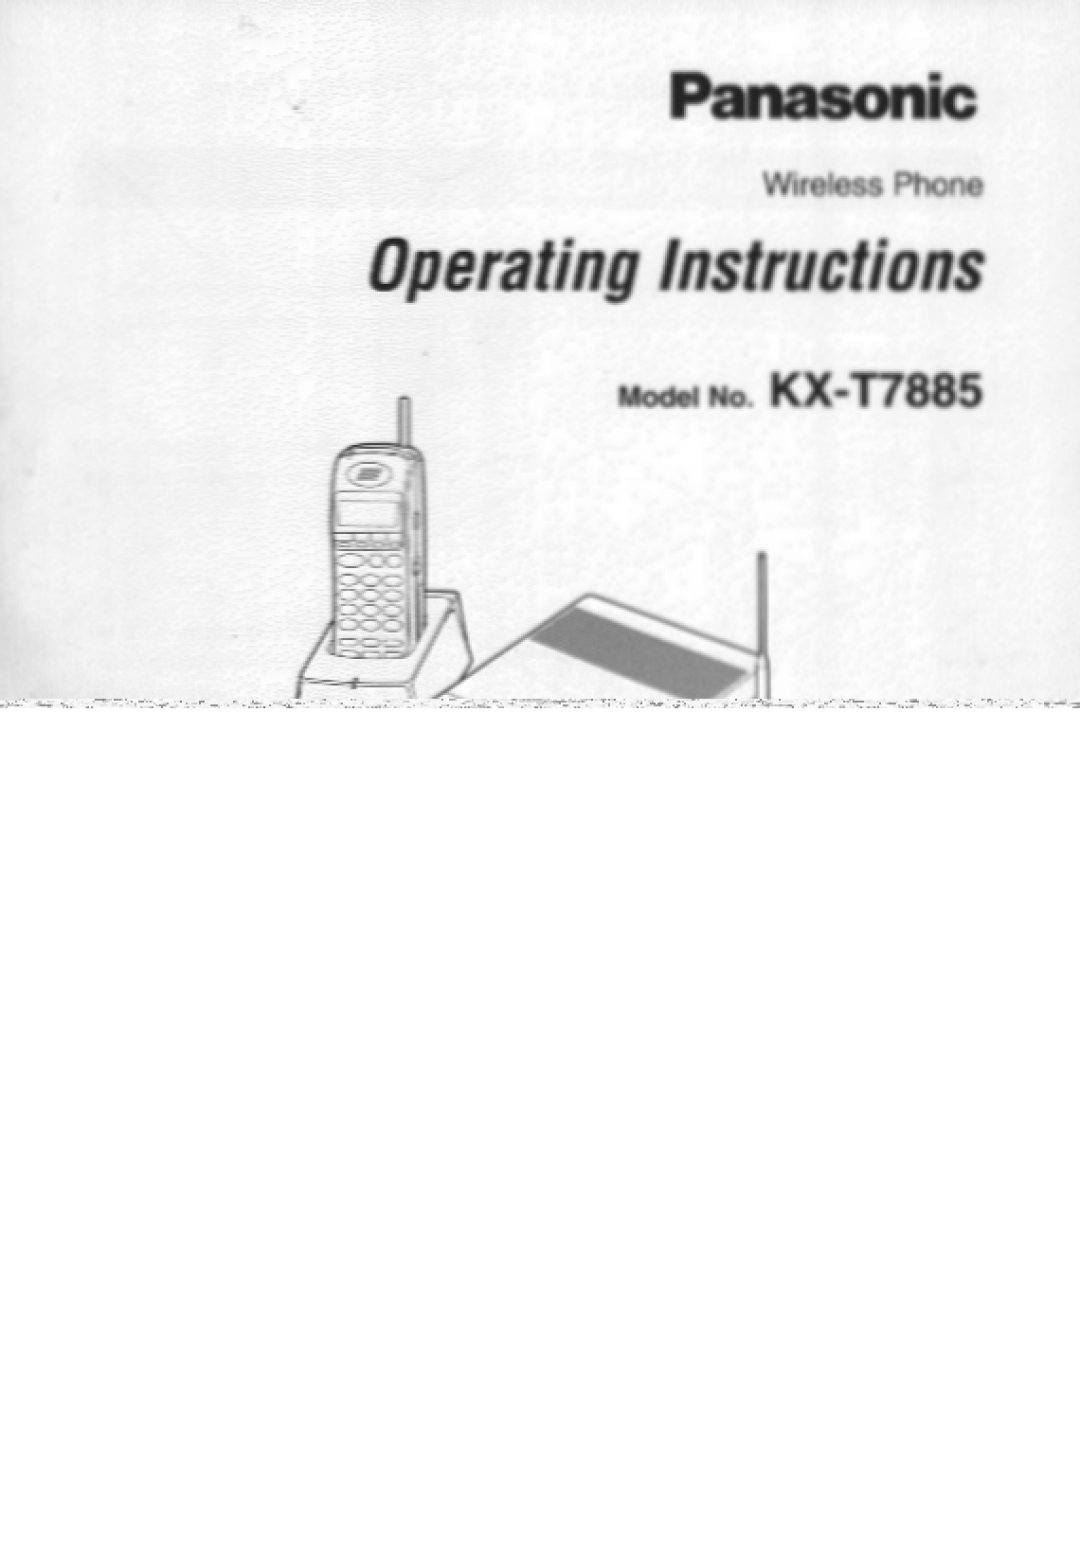 Panasonic manual KX-T7885 KX-T7885-W, 900MHz Multi-Line Wireless Telephone, Vibrating or Ringer Signal 